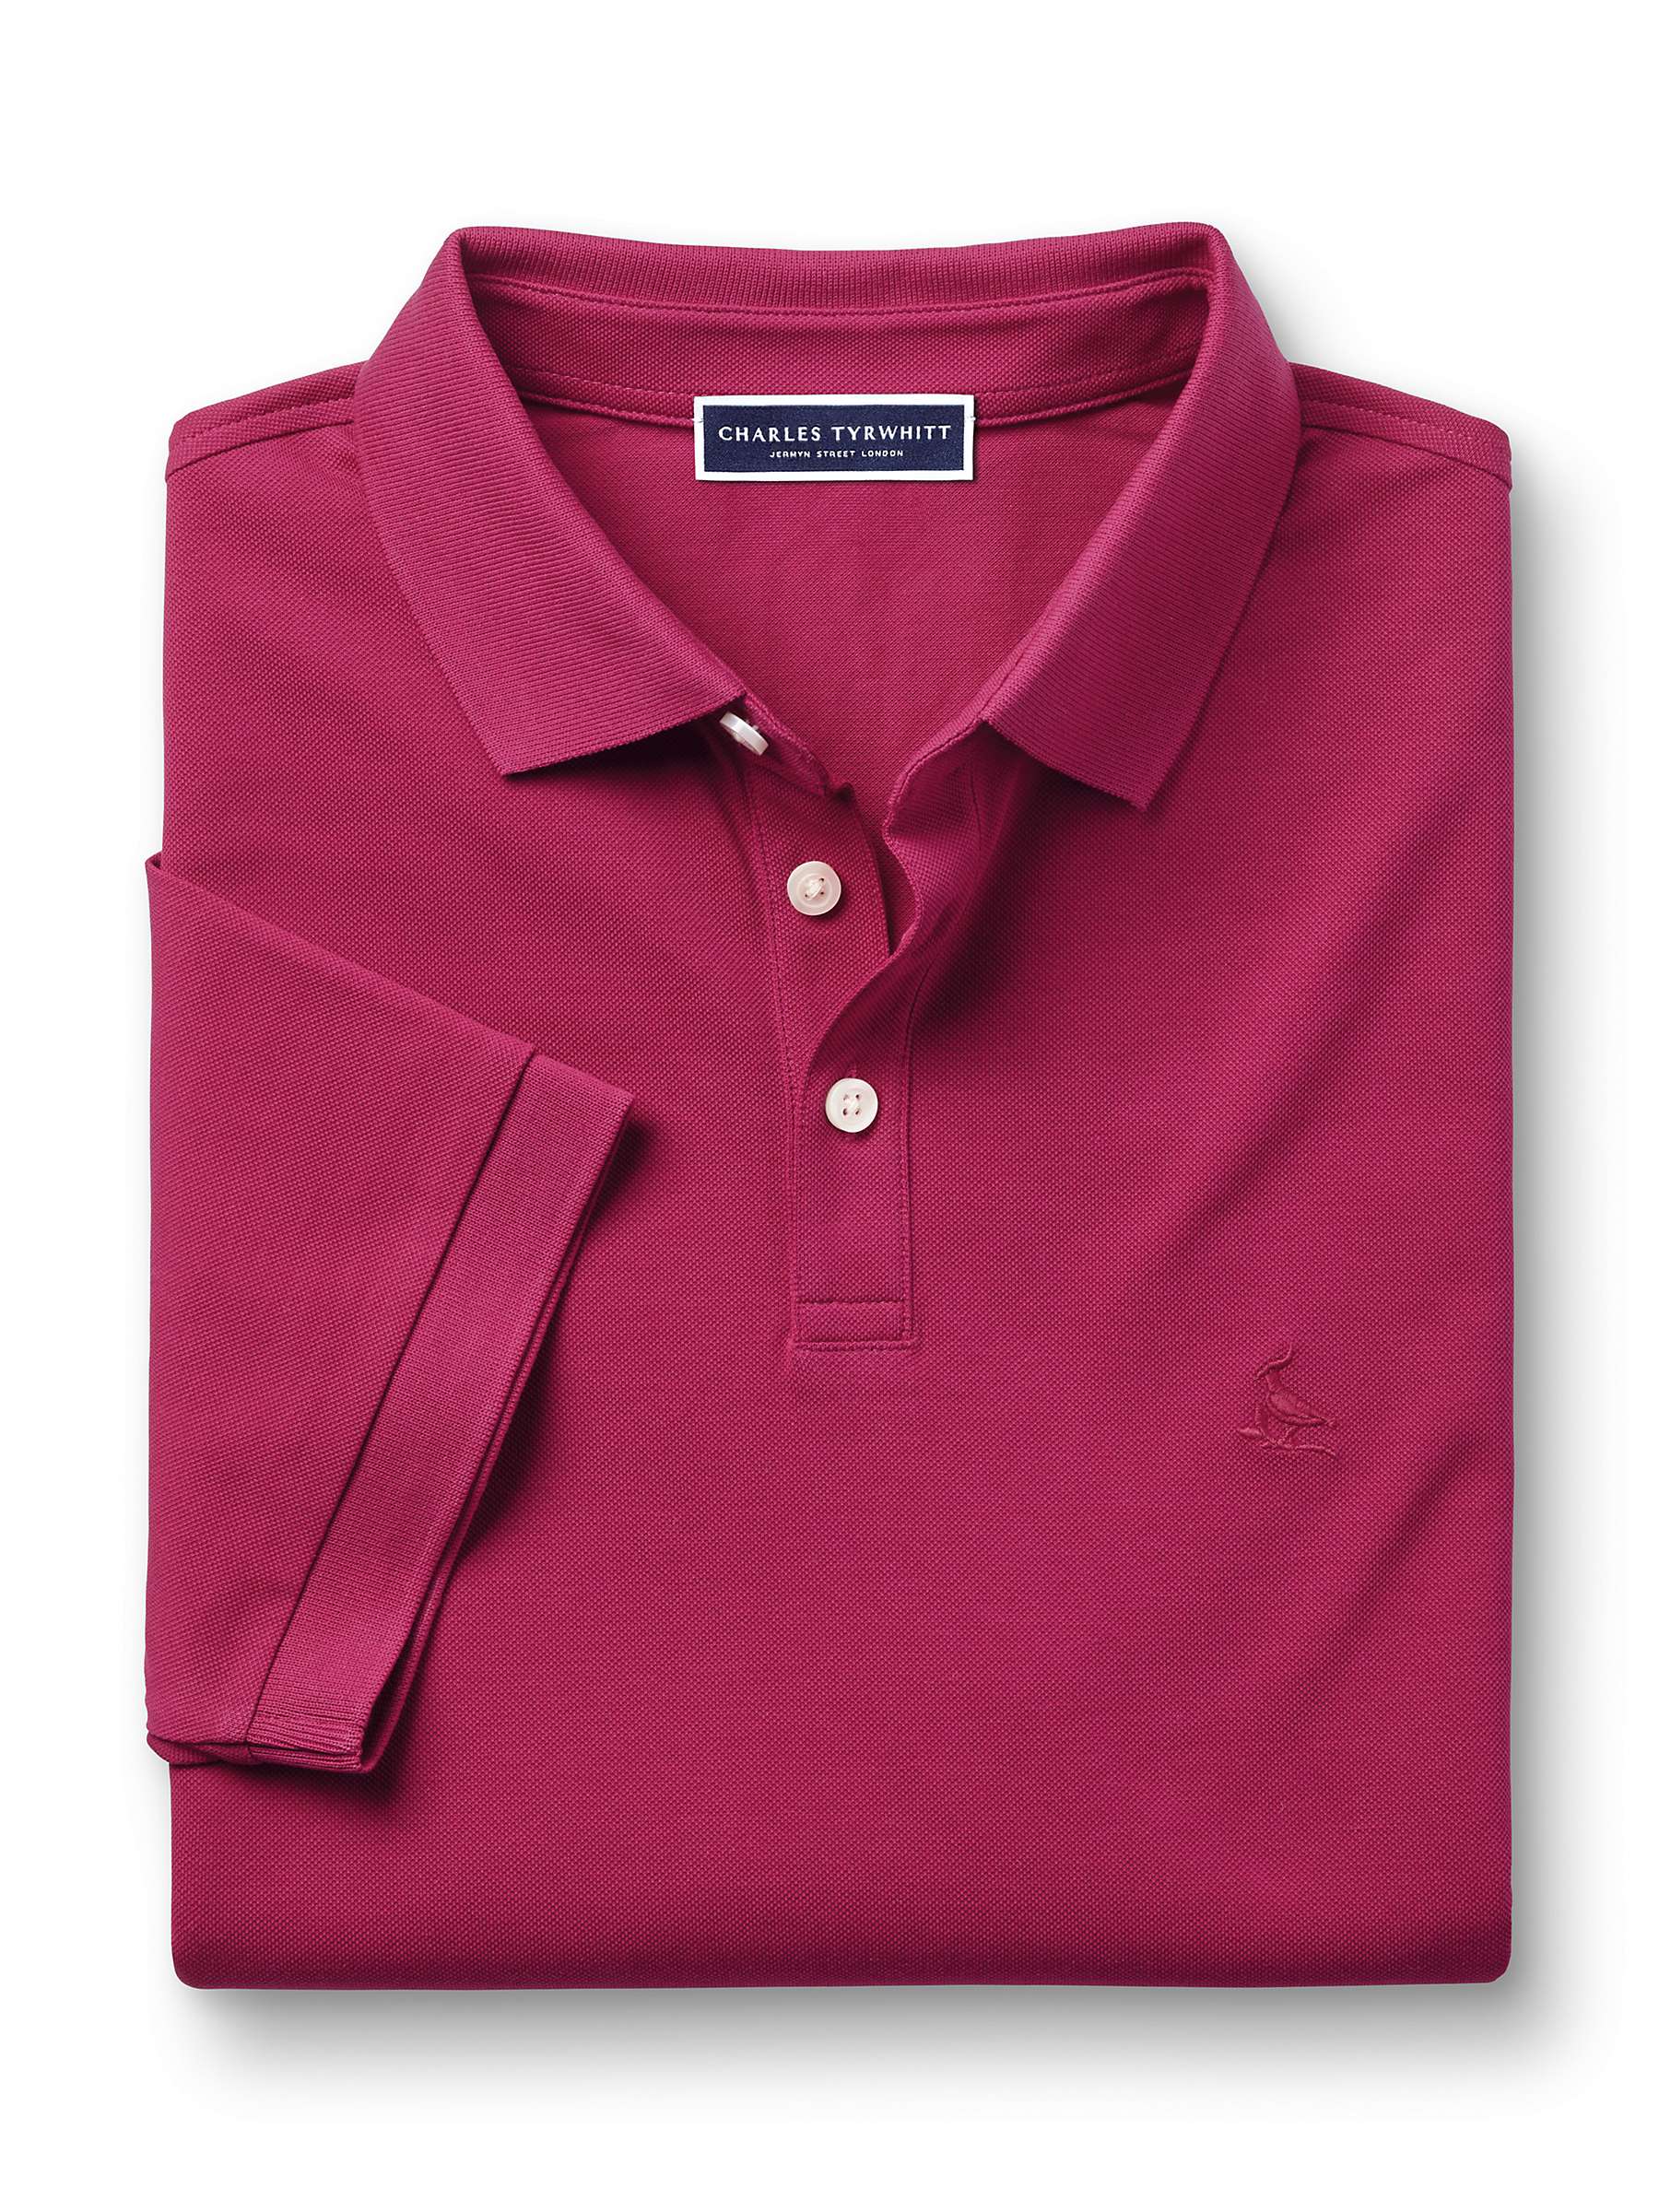 Buy Charles Tyrwhitt Short Sleeve Polo Shirt Online at johnlewis.com